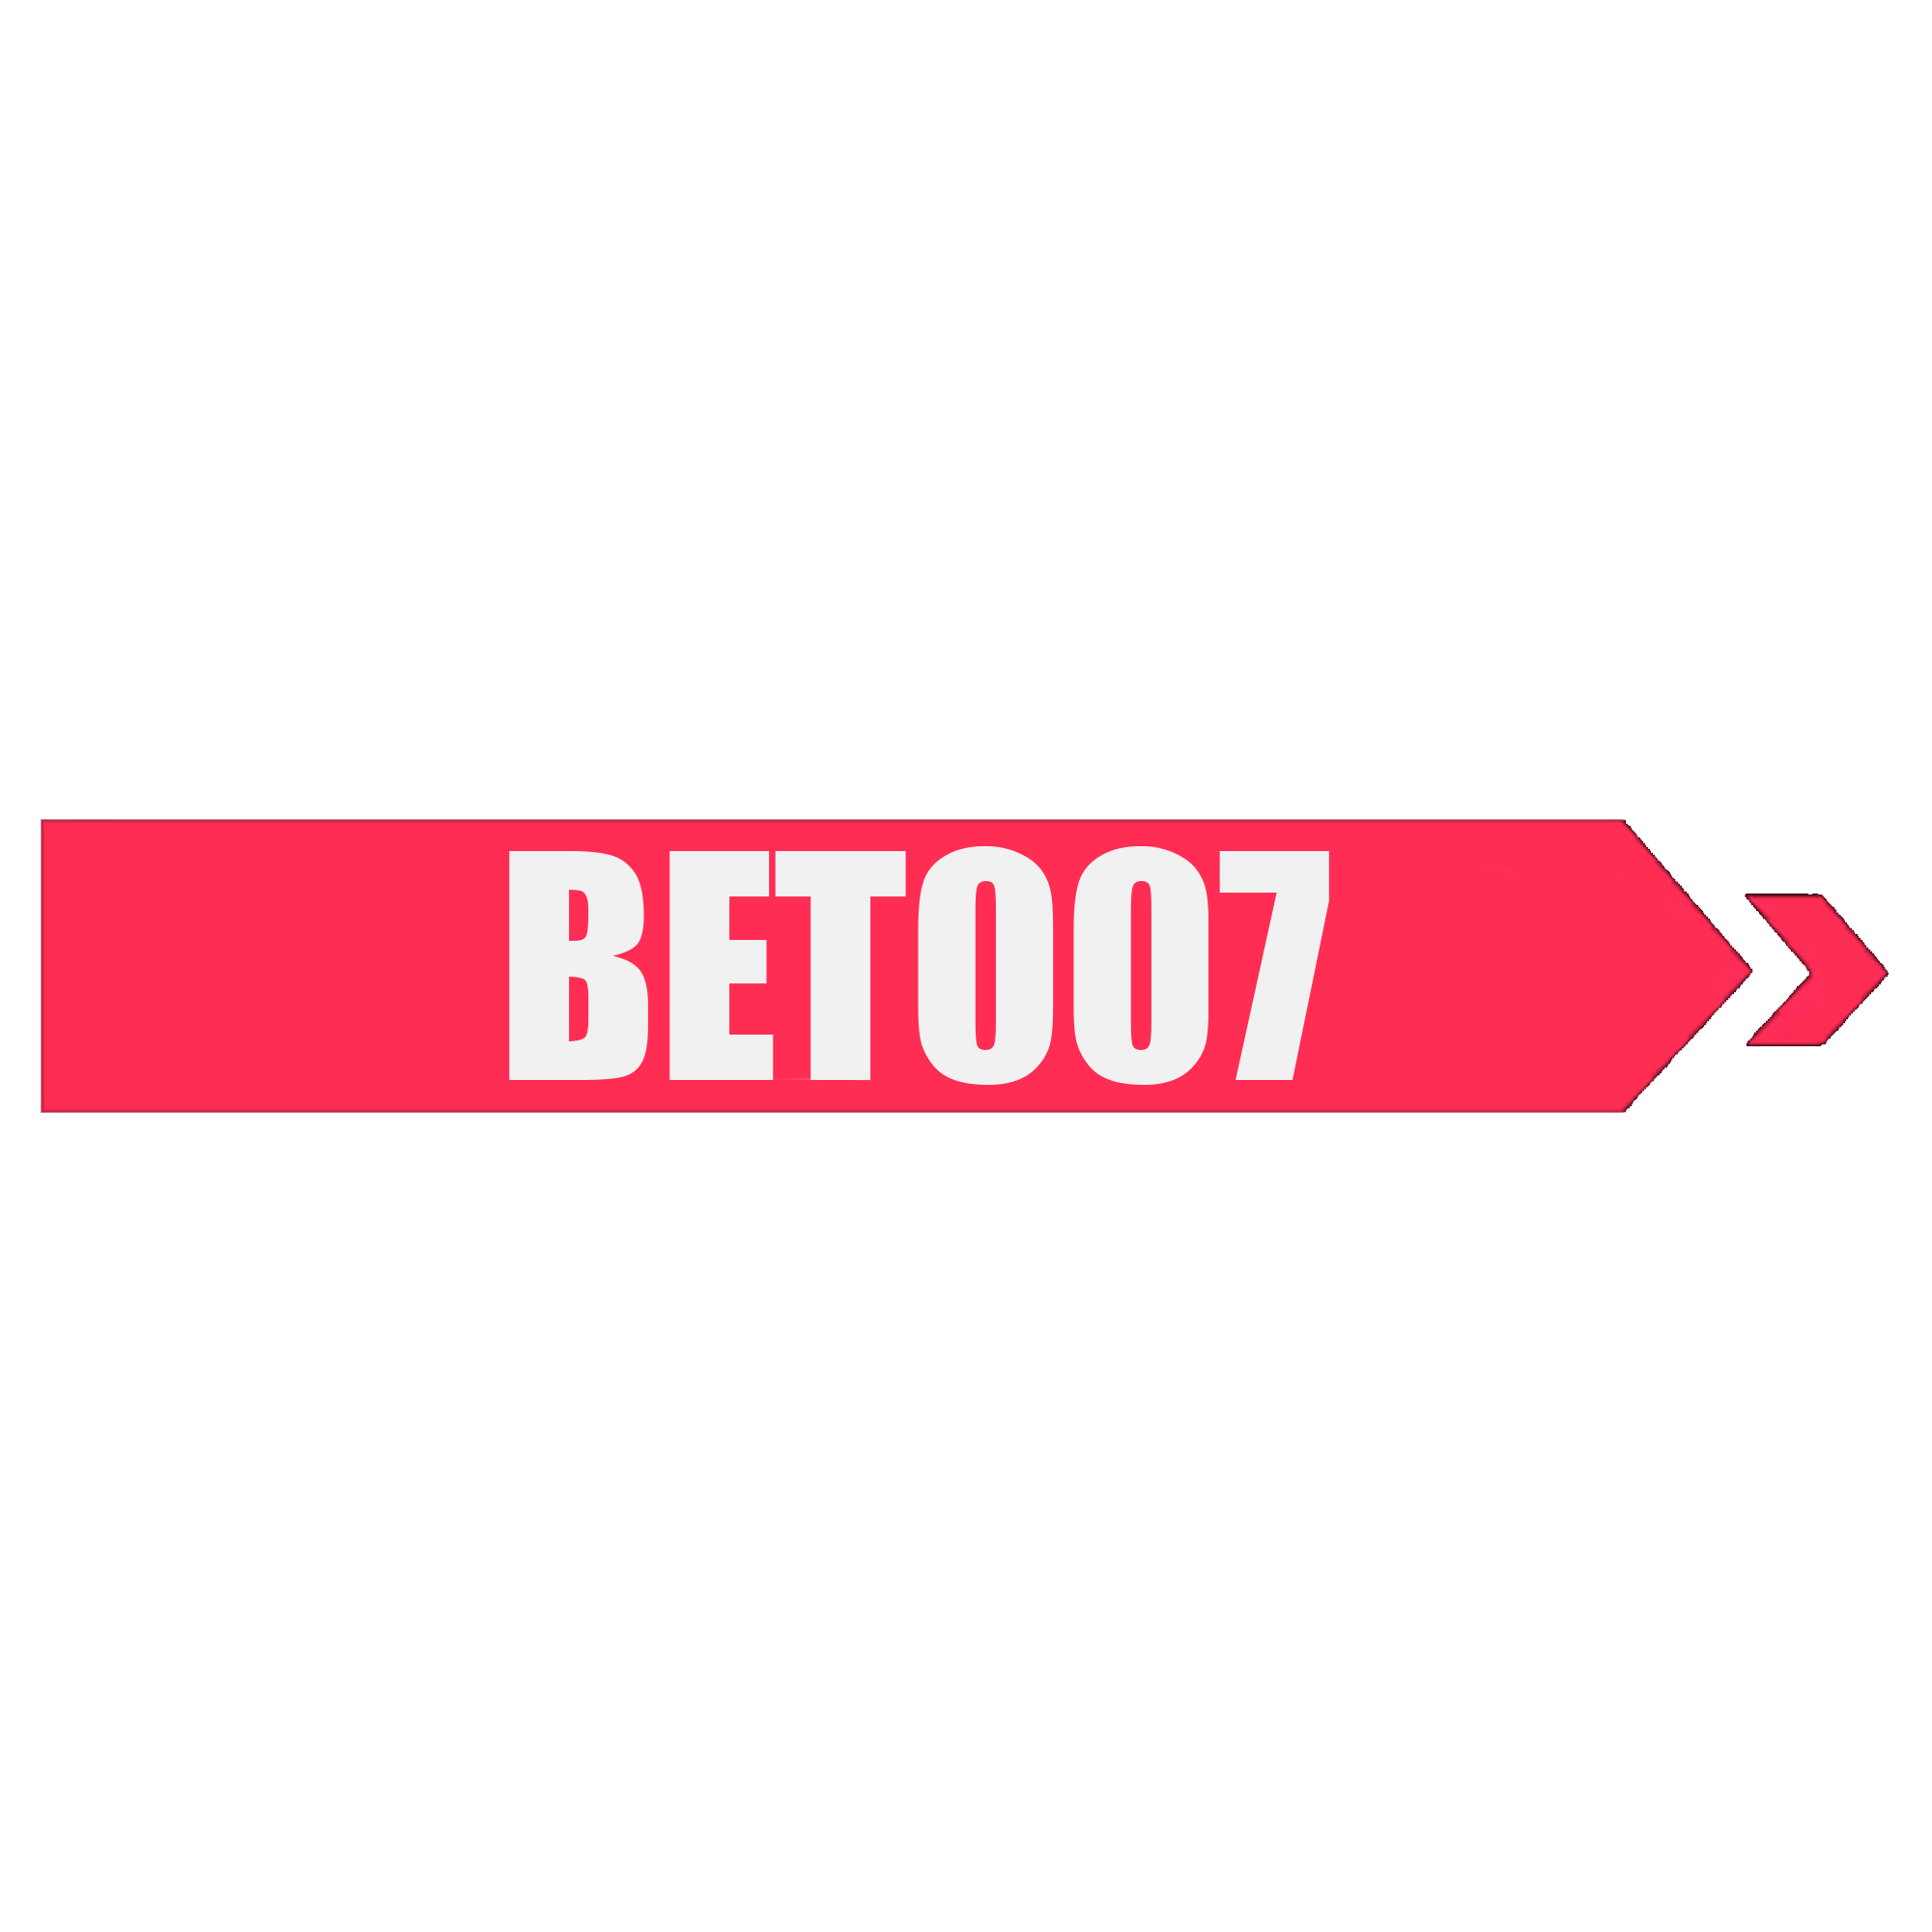 Bet007